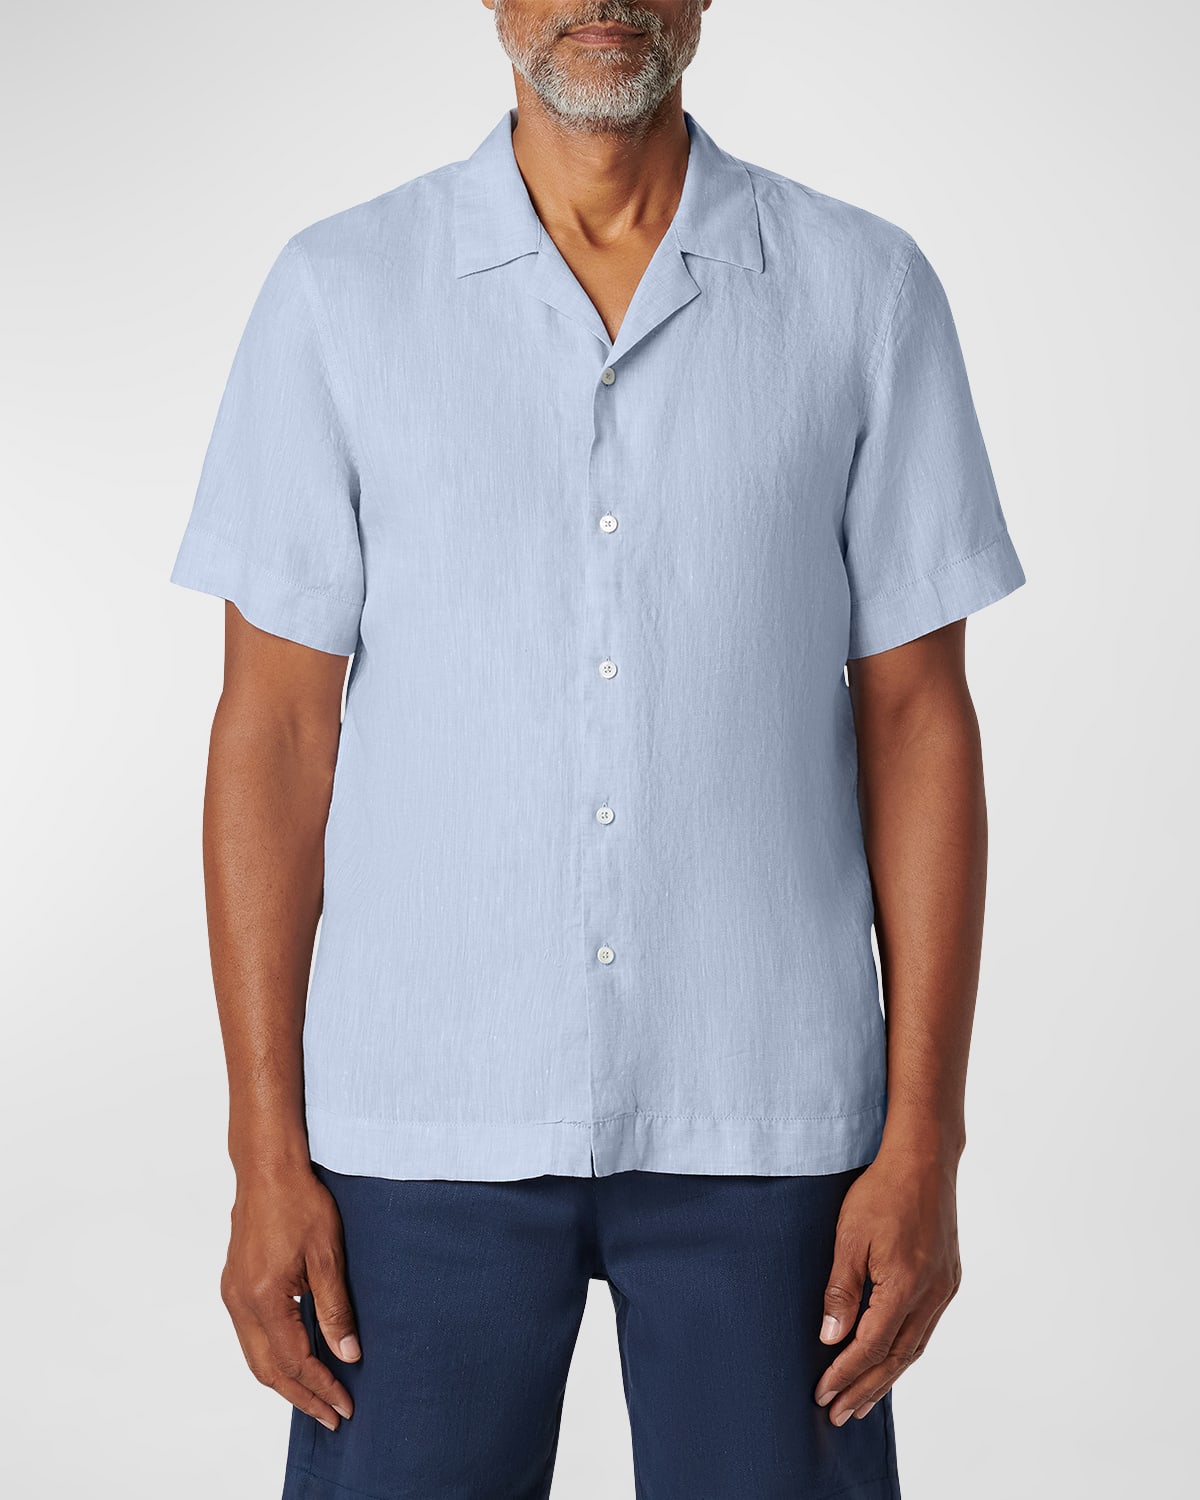 Men's Linen Camp Shirt